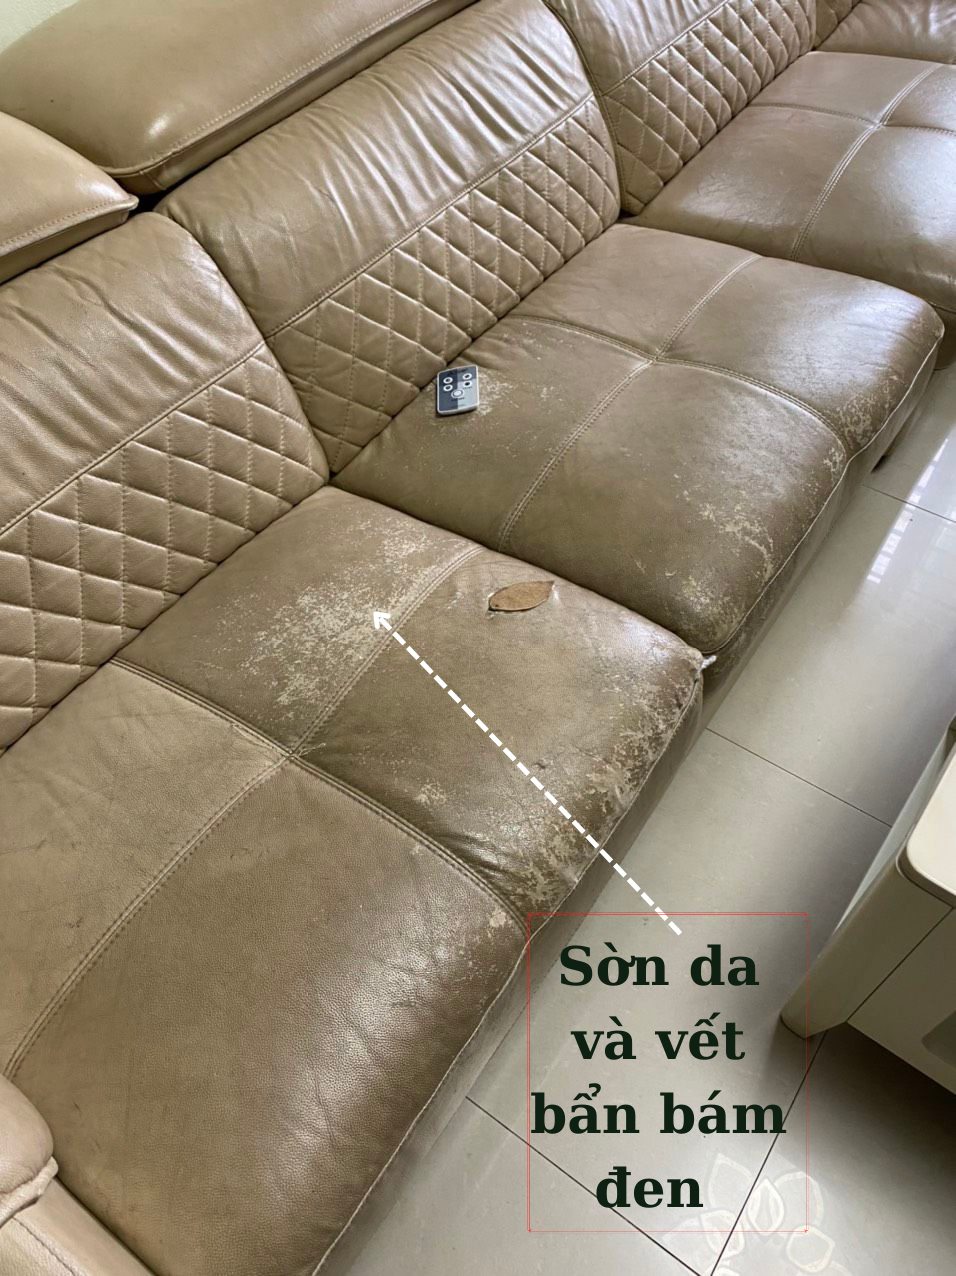 Cận cảnh ghế sofa bị bong chóc và bẩn của khách tại P. Tố Hữu